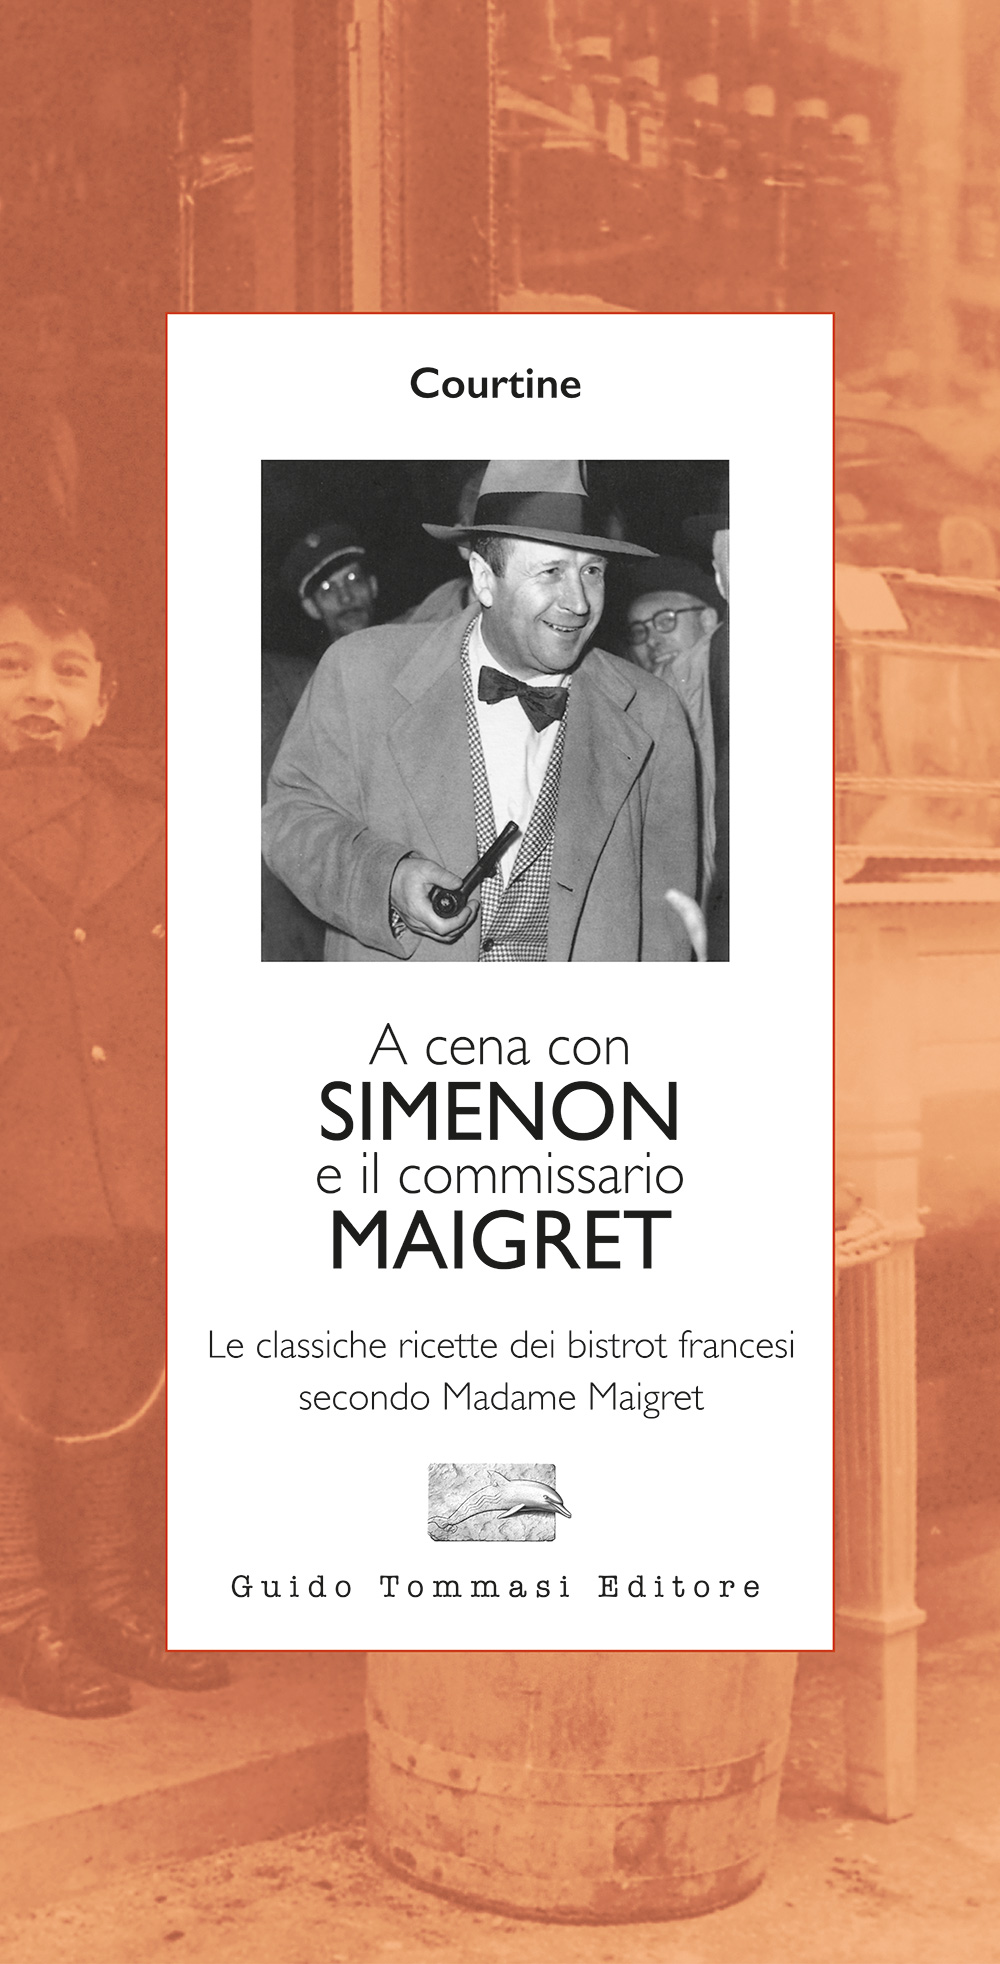 A cena con Simenon e il commissario Maigret